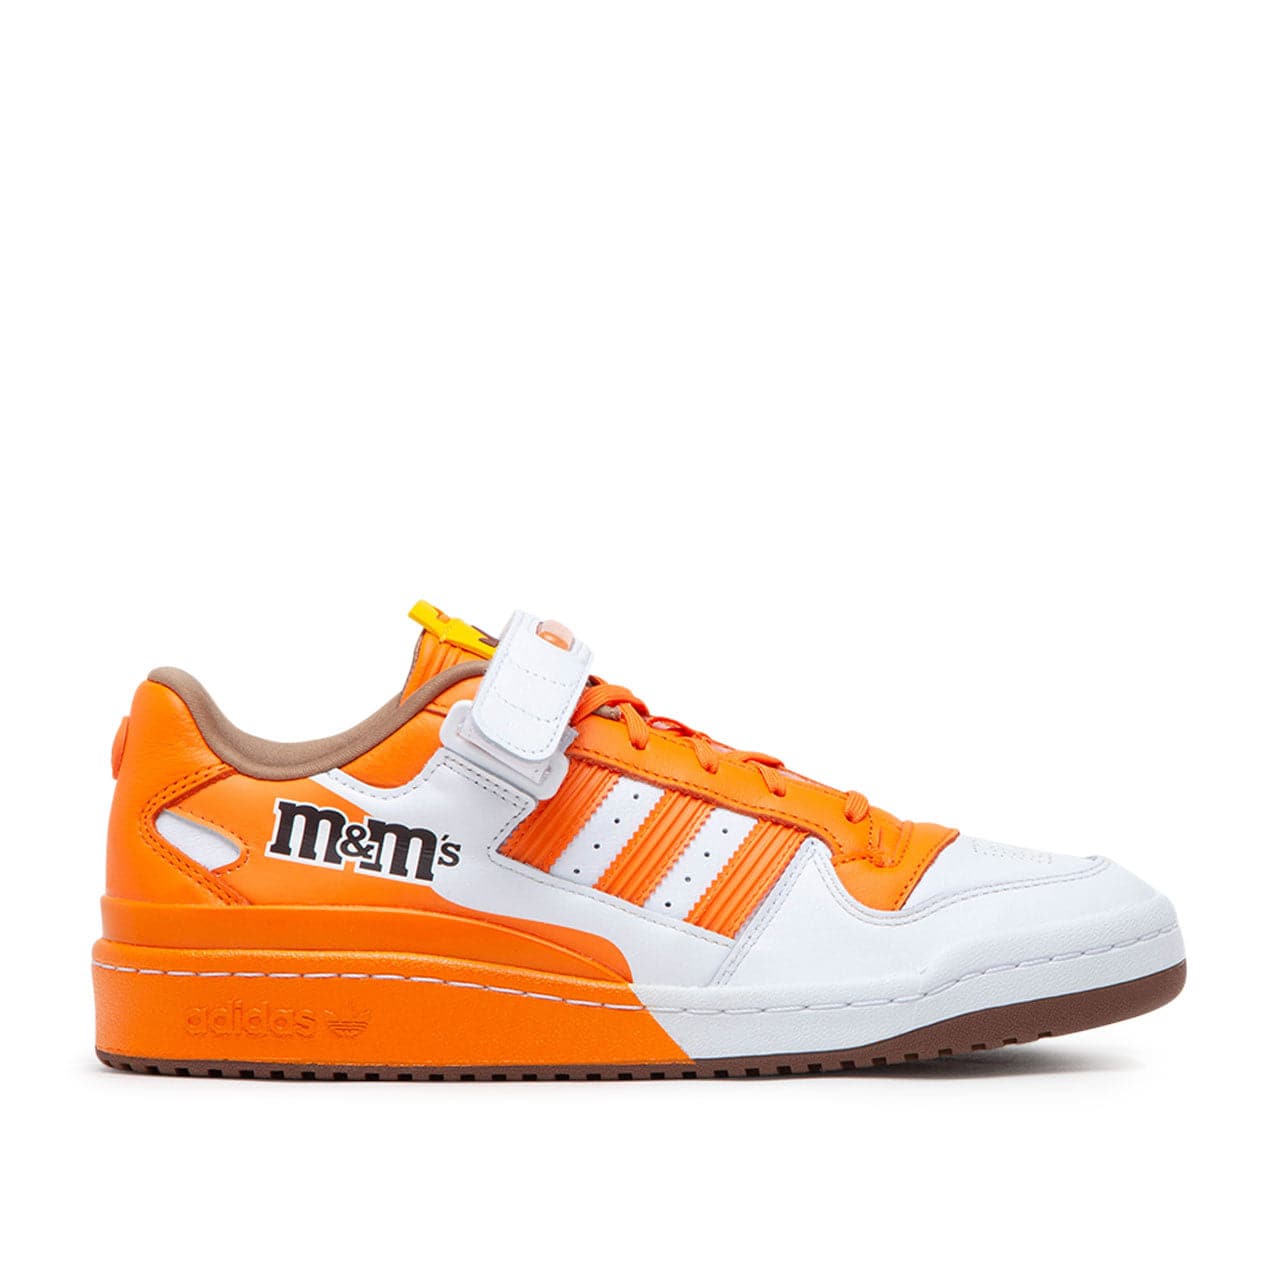 adidas x M&M's Forum Low 84 (Orange / Weiß)  - Allike Store